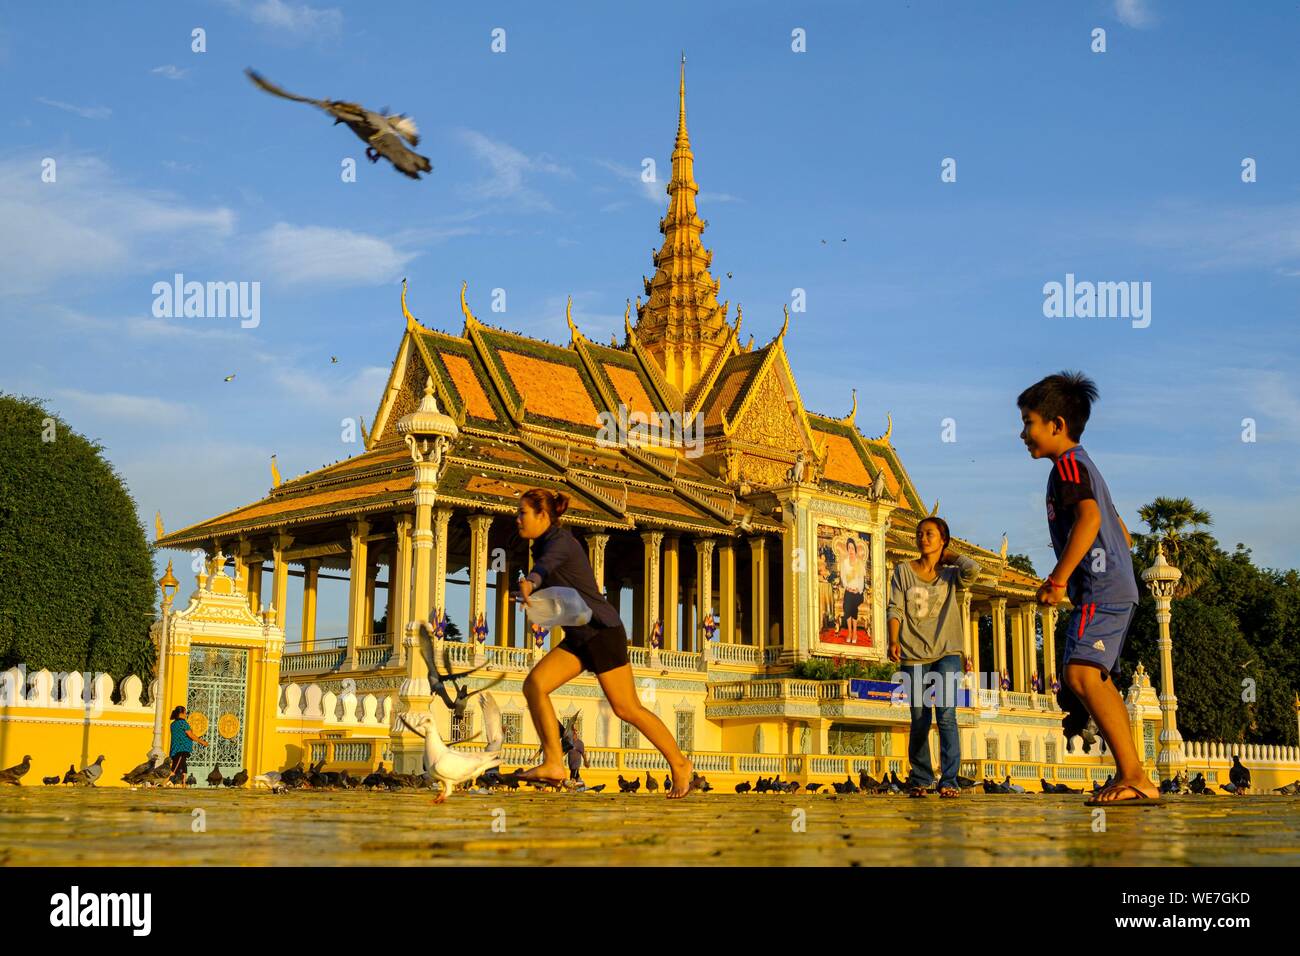 Cambodge, Phnom Penh, le Palais Royal, résidence du Roi du Cambodge, construit en 1860, les enfants qui jouent avec les pigeons Banque D'Images